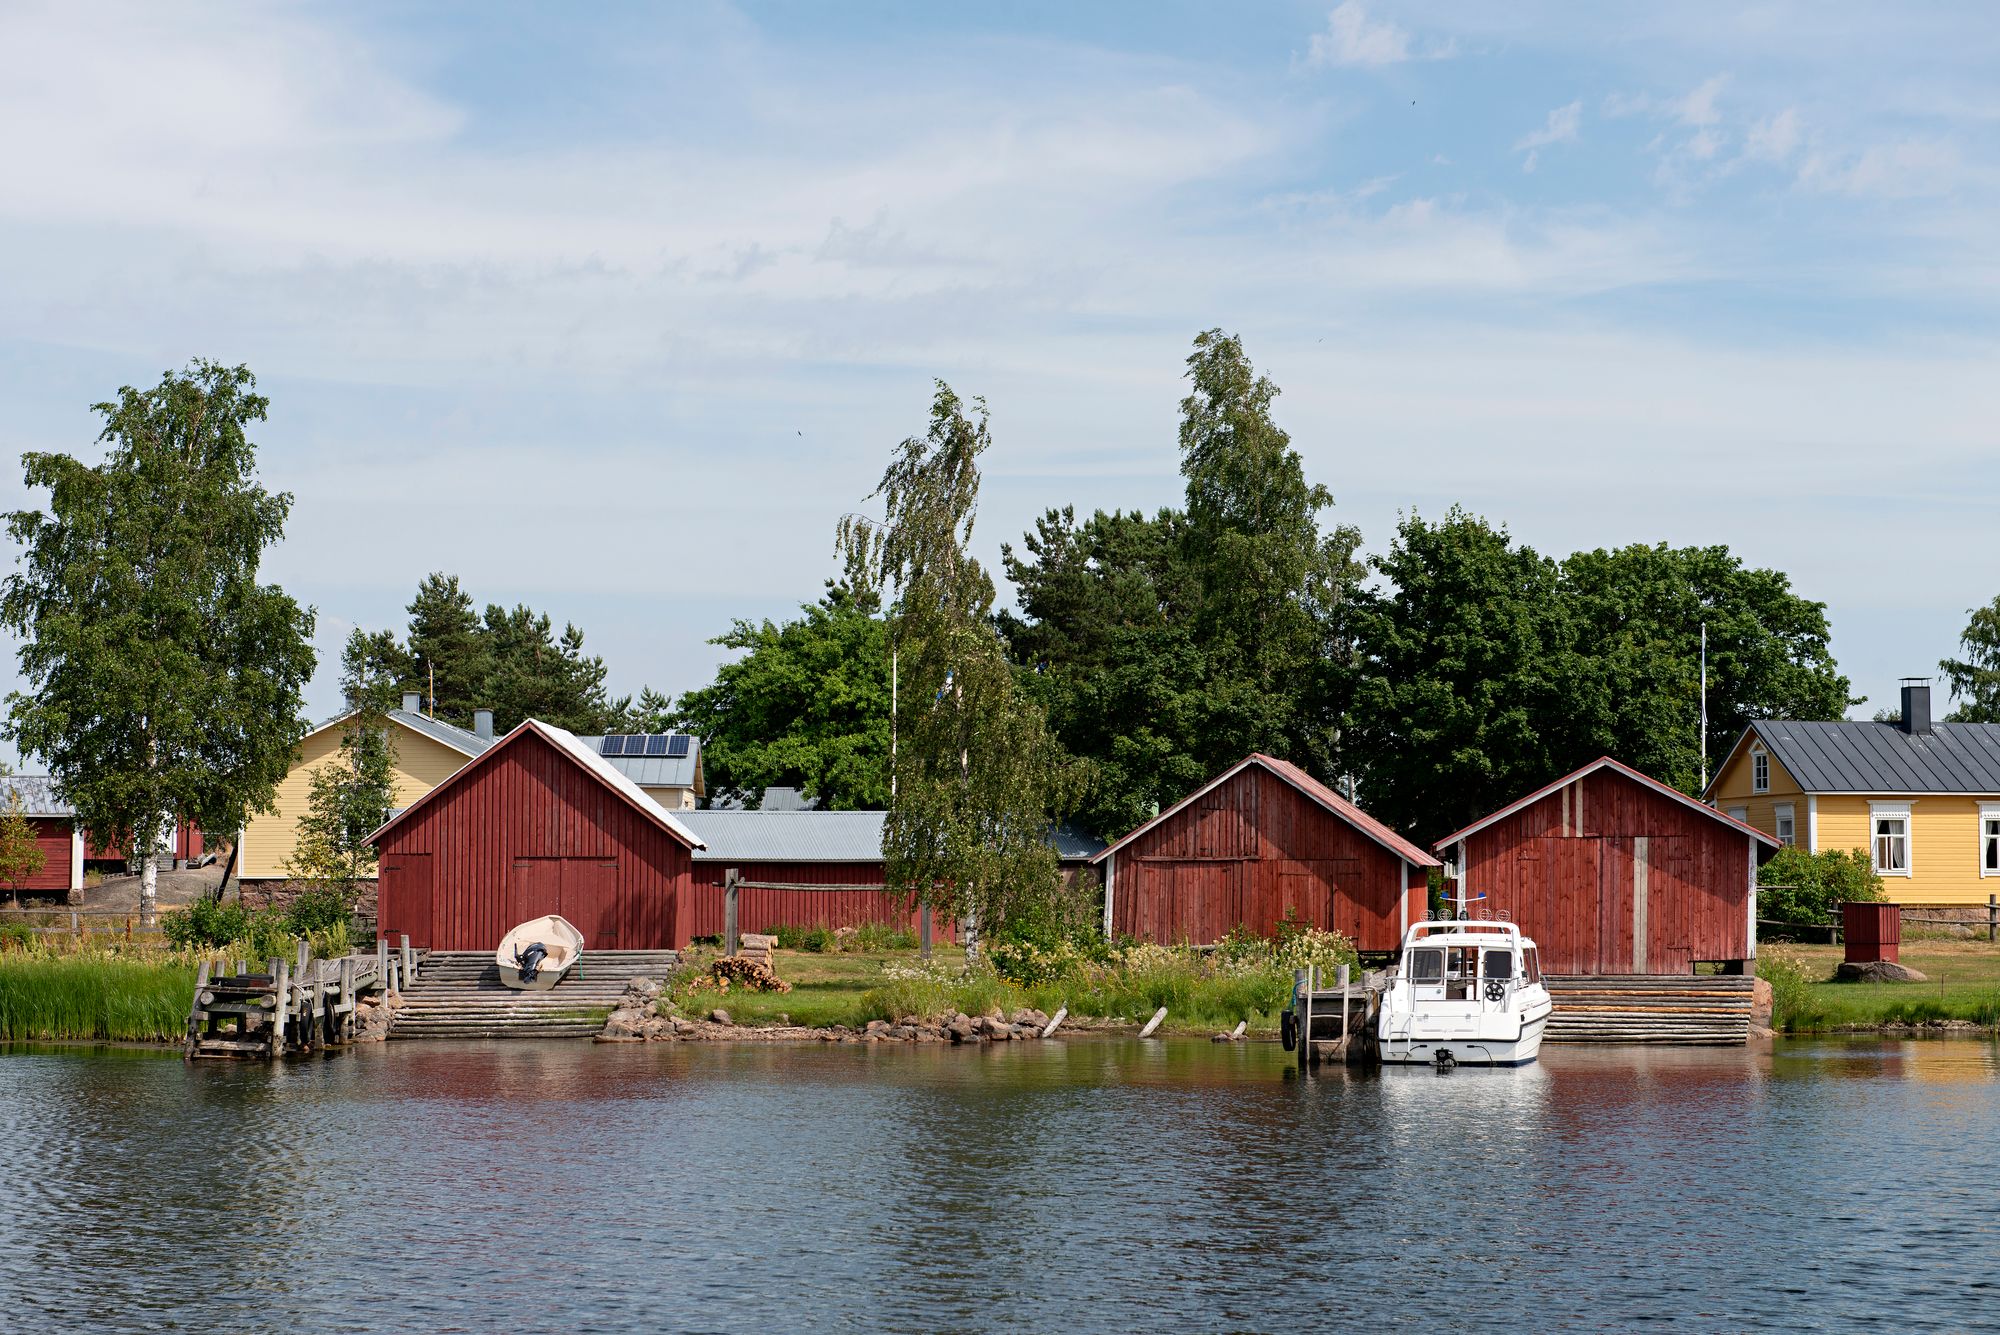 Viklan suunnasta vanha kalastajakylä näyttää pittoreskin kauniilta. Osa kalastajakylän taloista on rakennettu 1800-luvun puolivälin jälkeen. © Linda Varoma